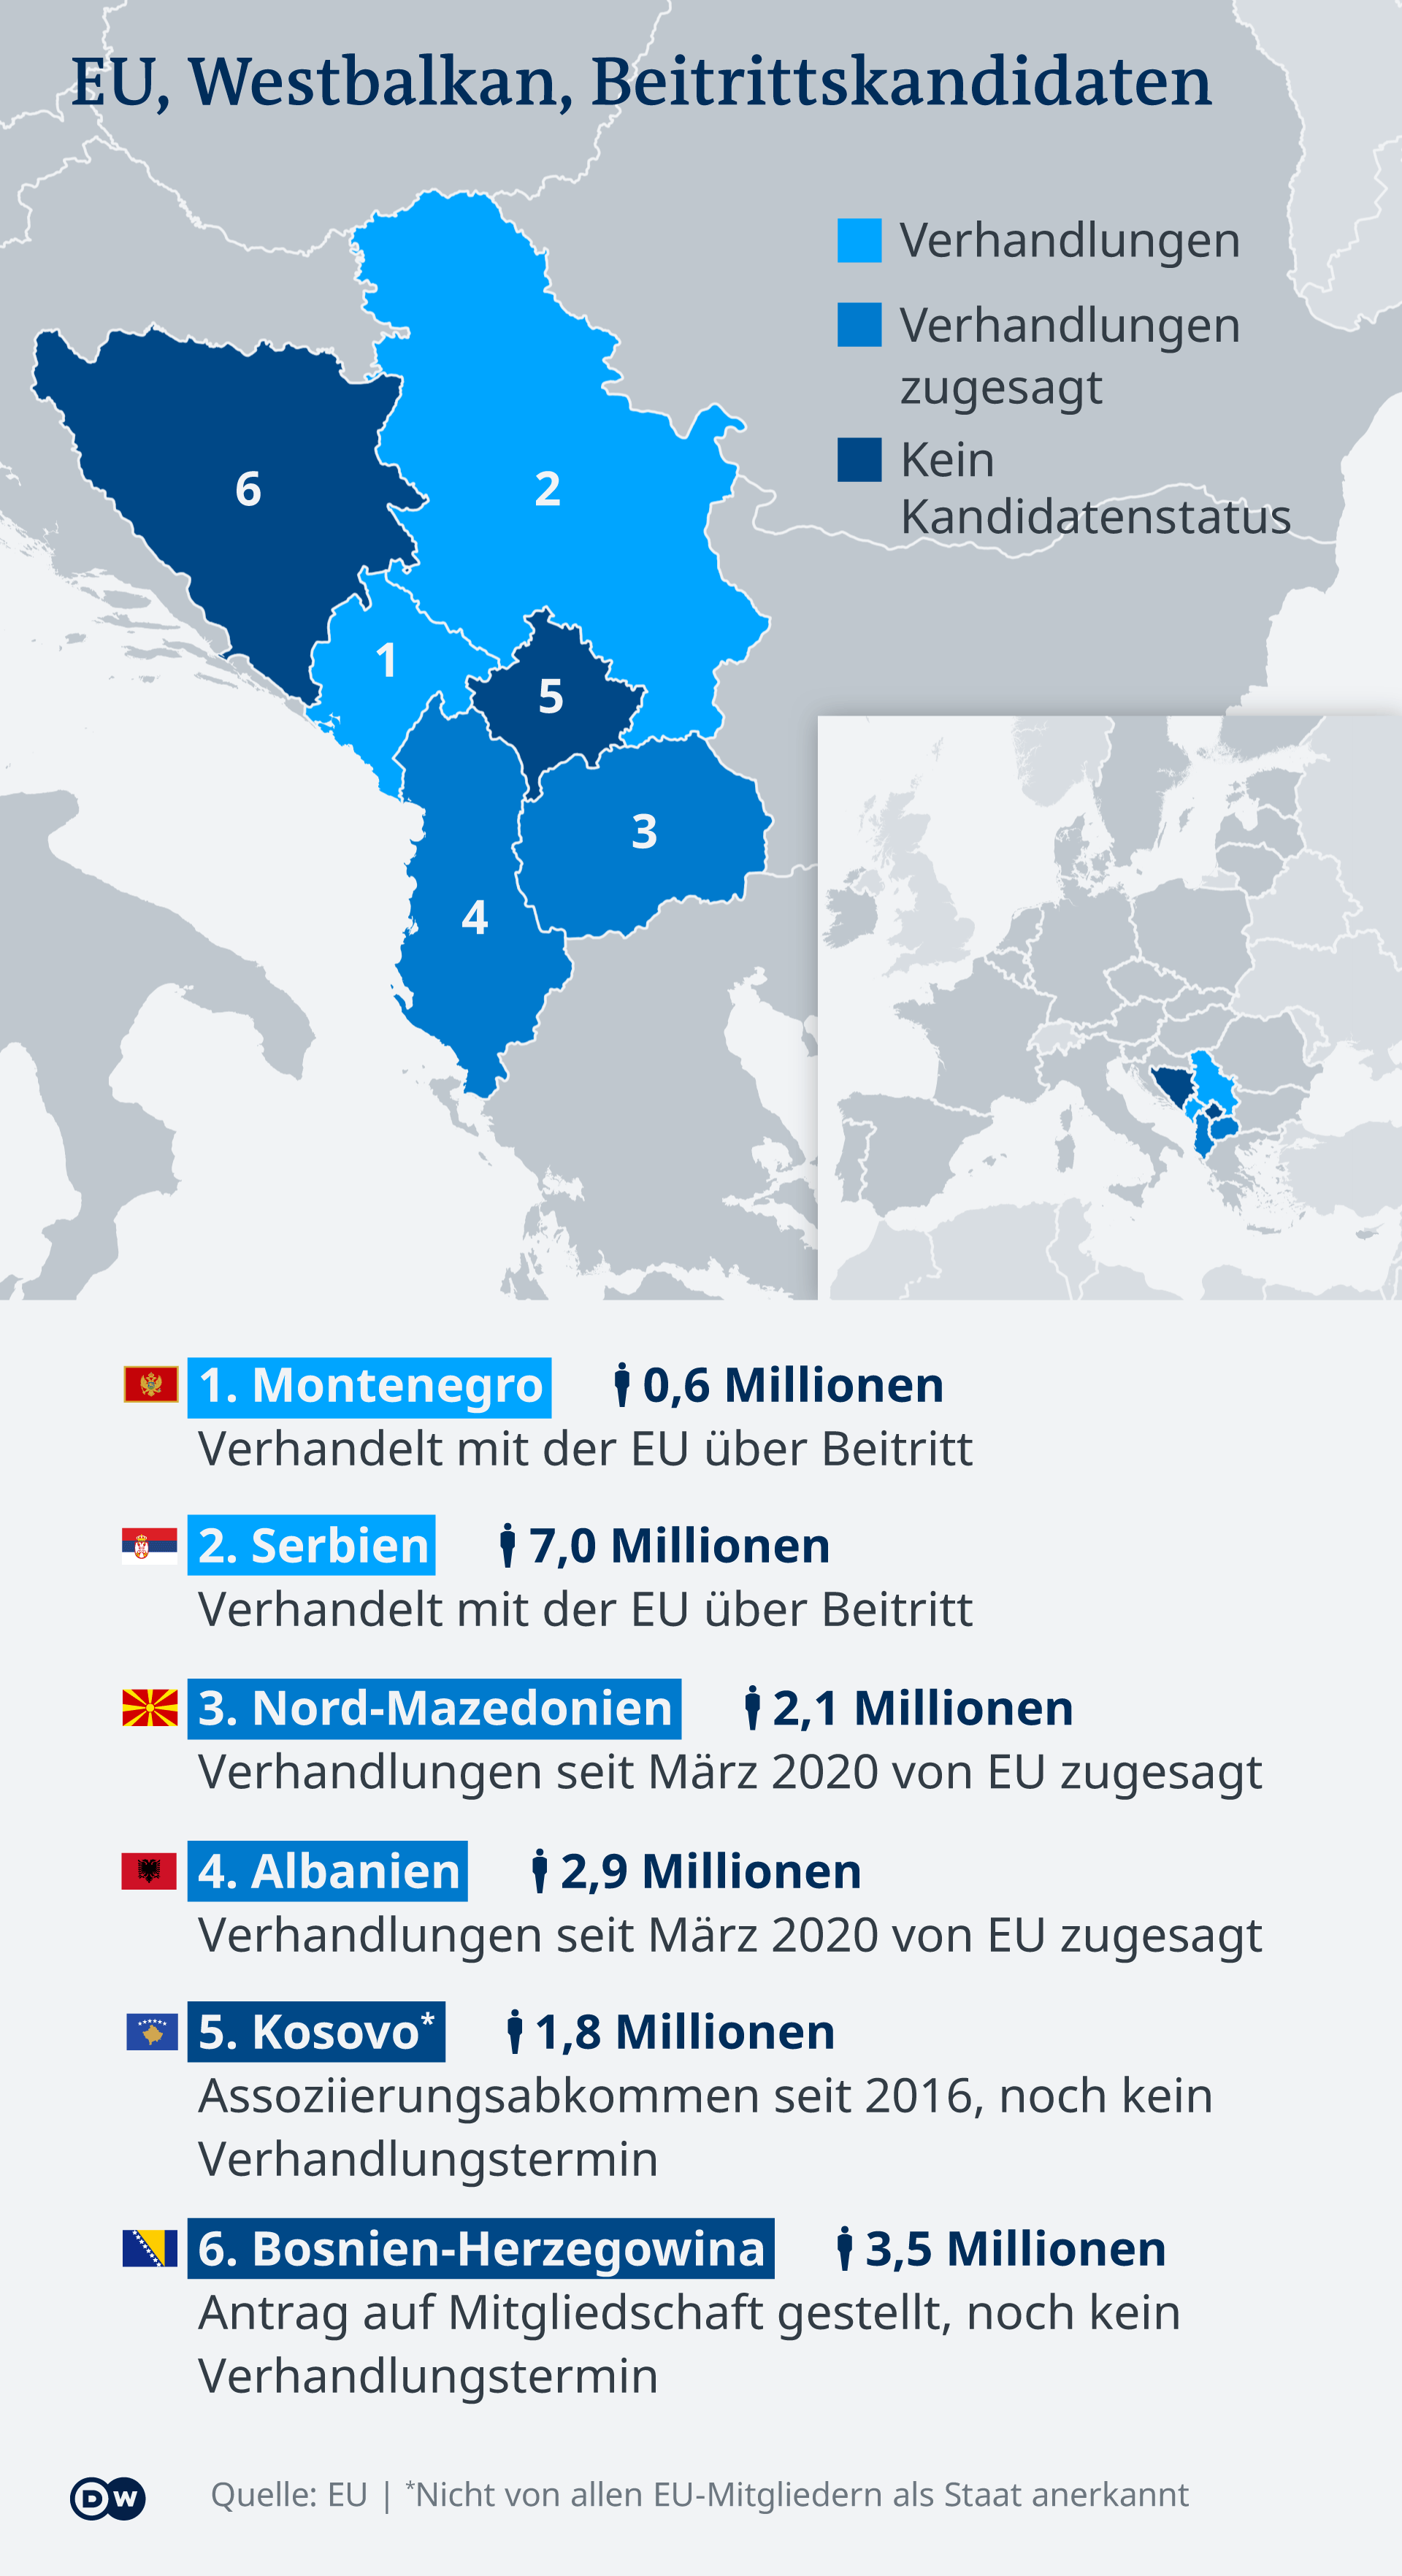 Bundeswehr soll wieder nach Bosnien – DW – 15.06.2022